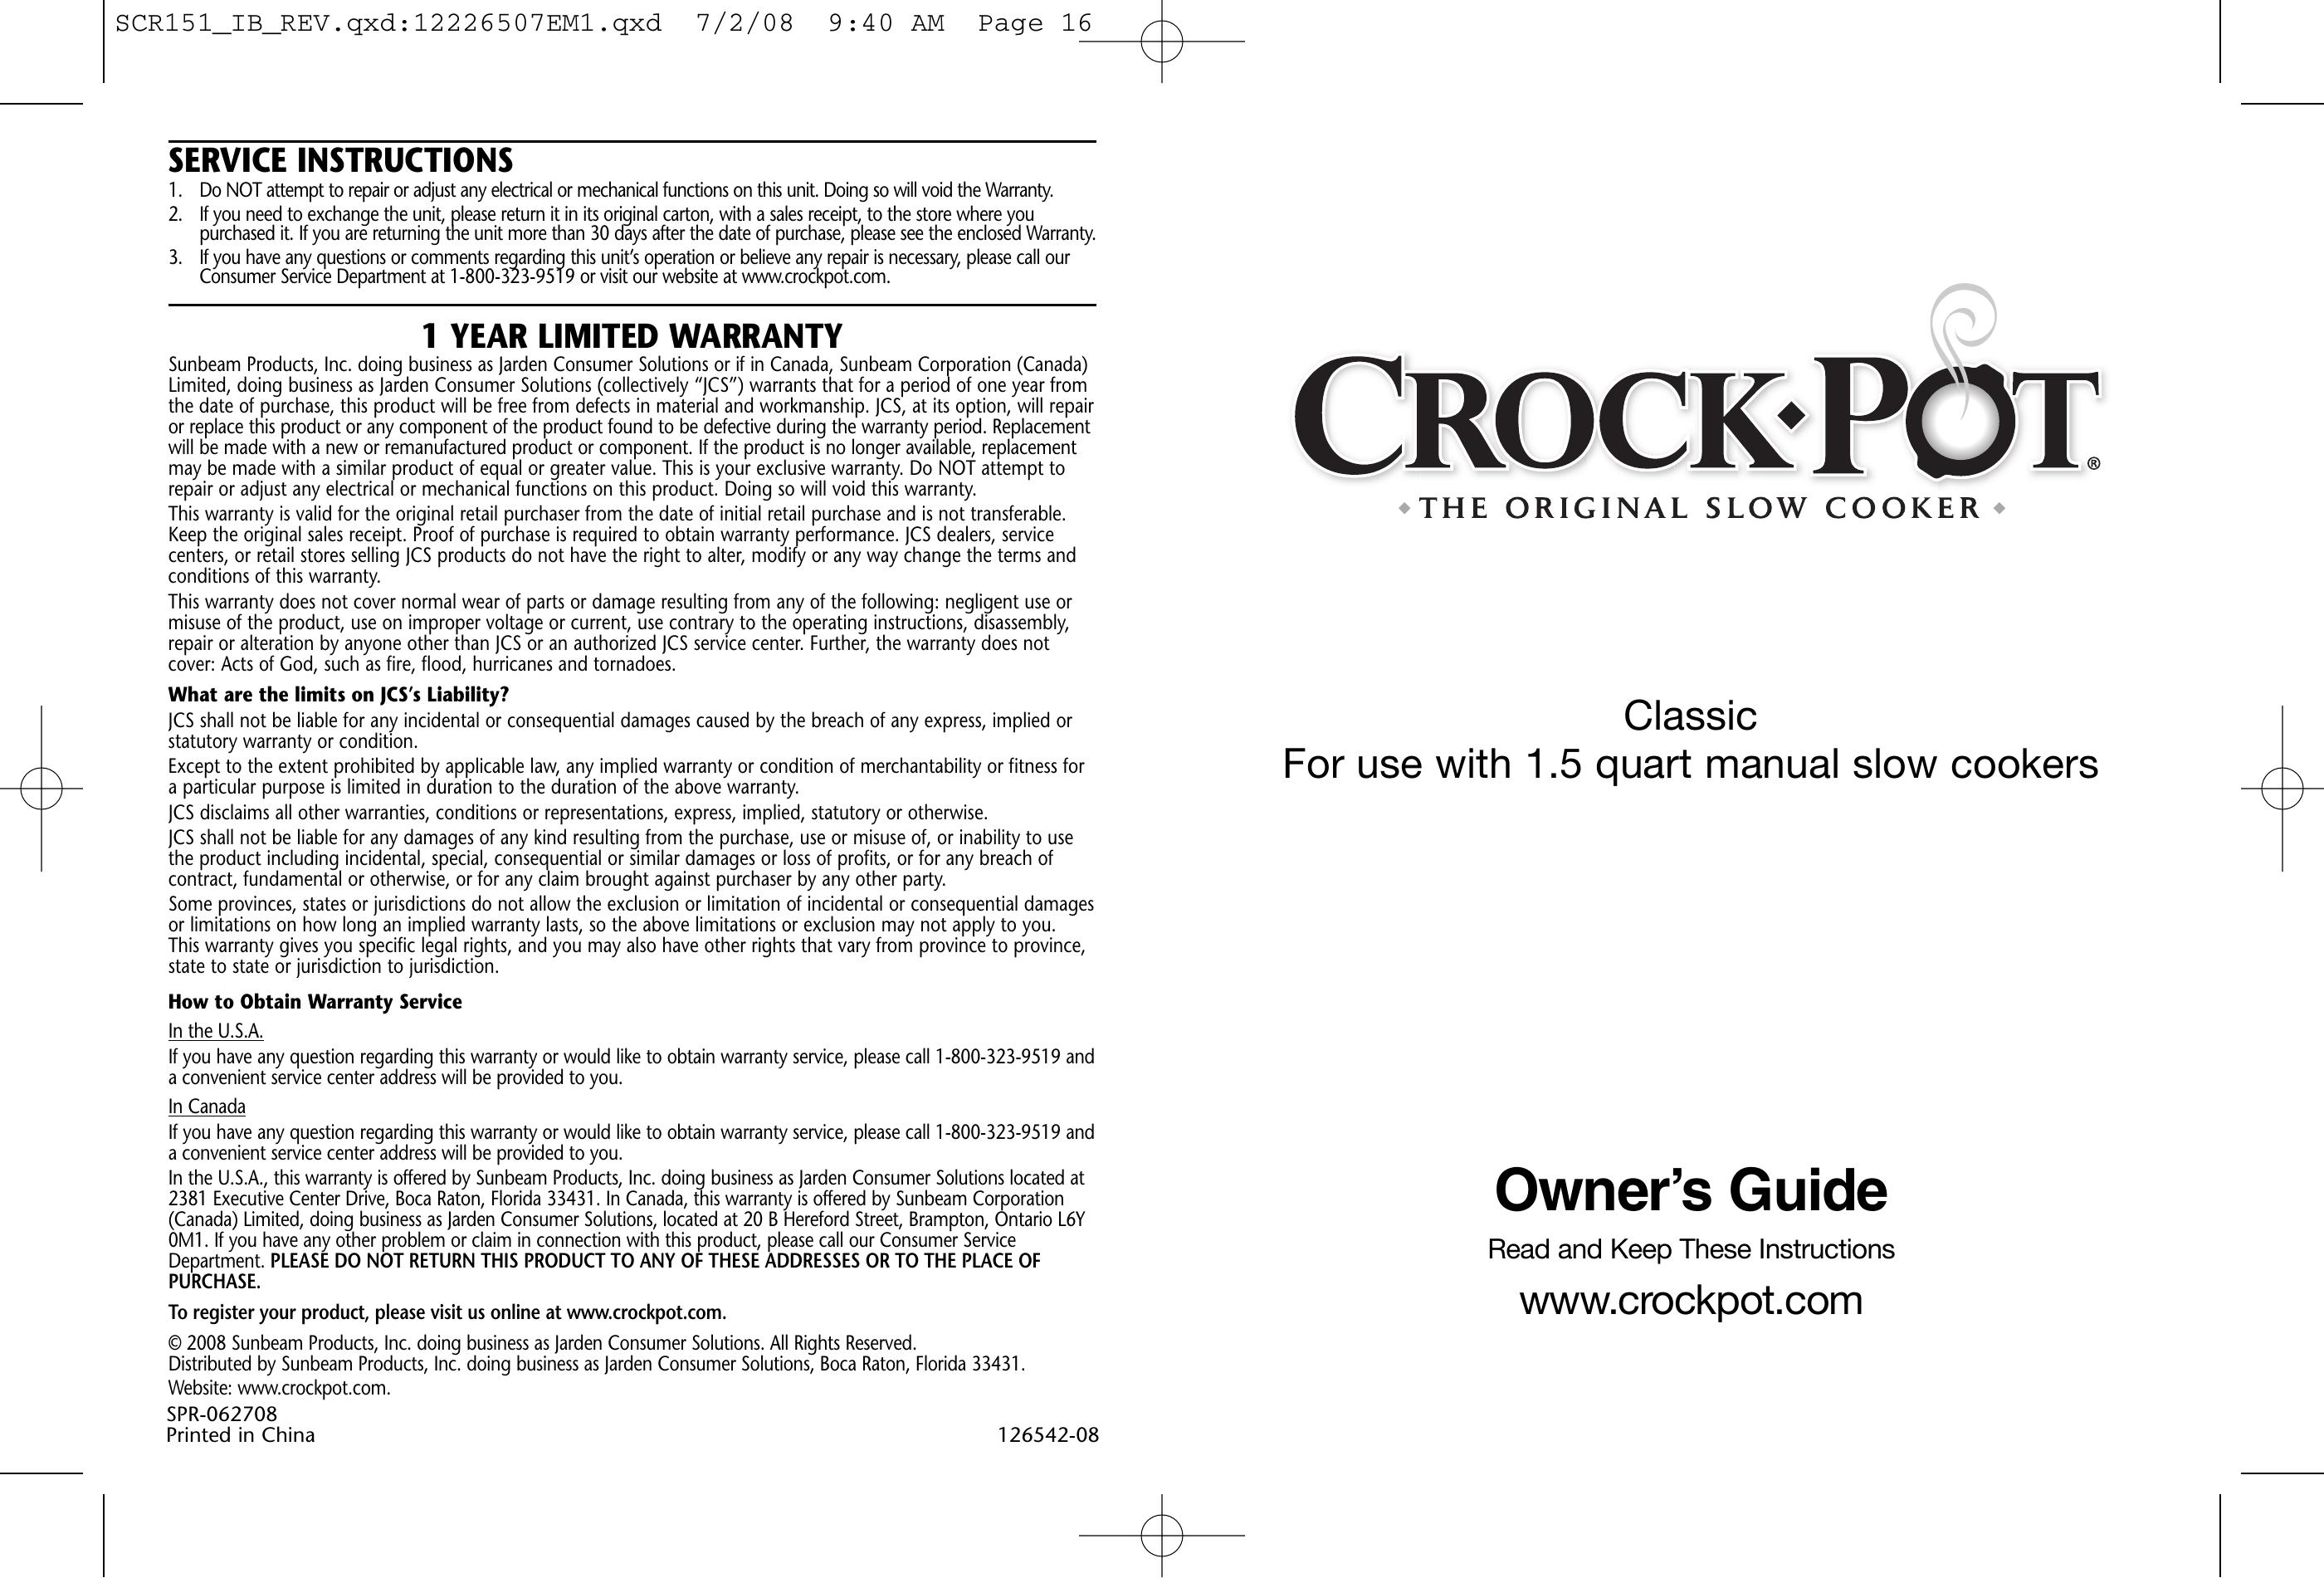 Crock-Pot 1.5 Quart Slow Cooker User Manual